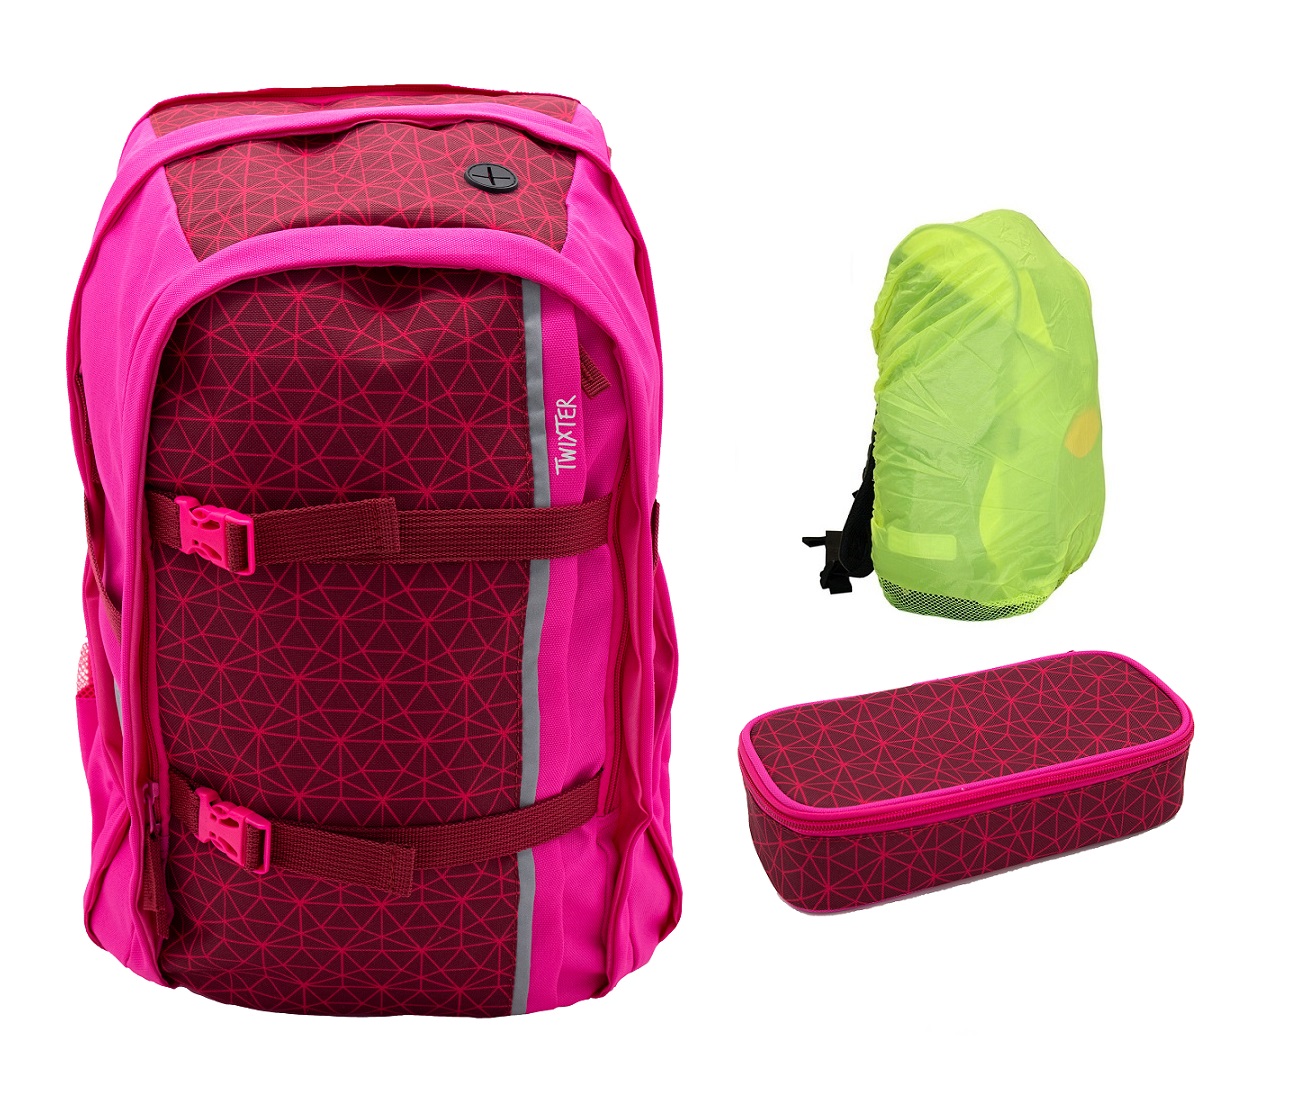 NEOXX Active Schulrucksack Pink in und Regenschutz famous Schlamperbox 3tlg. Set mit